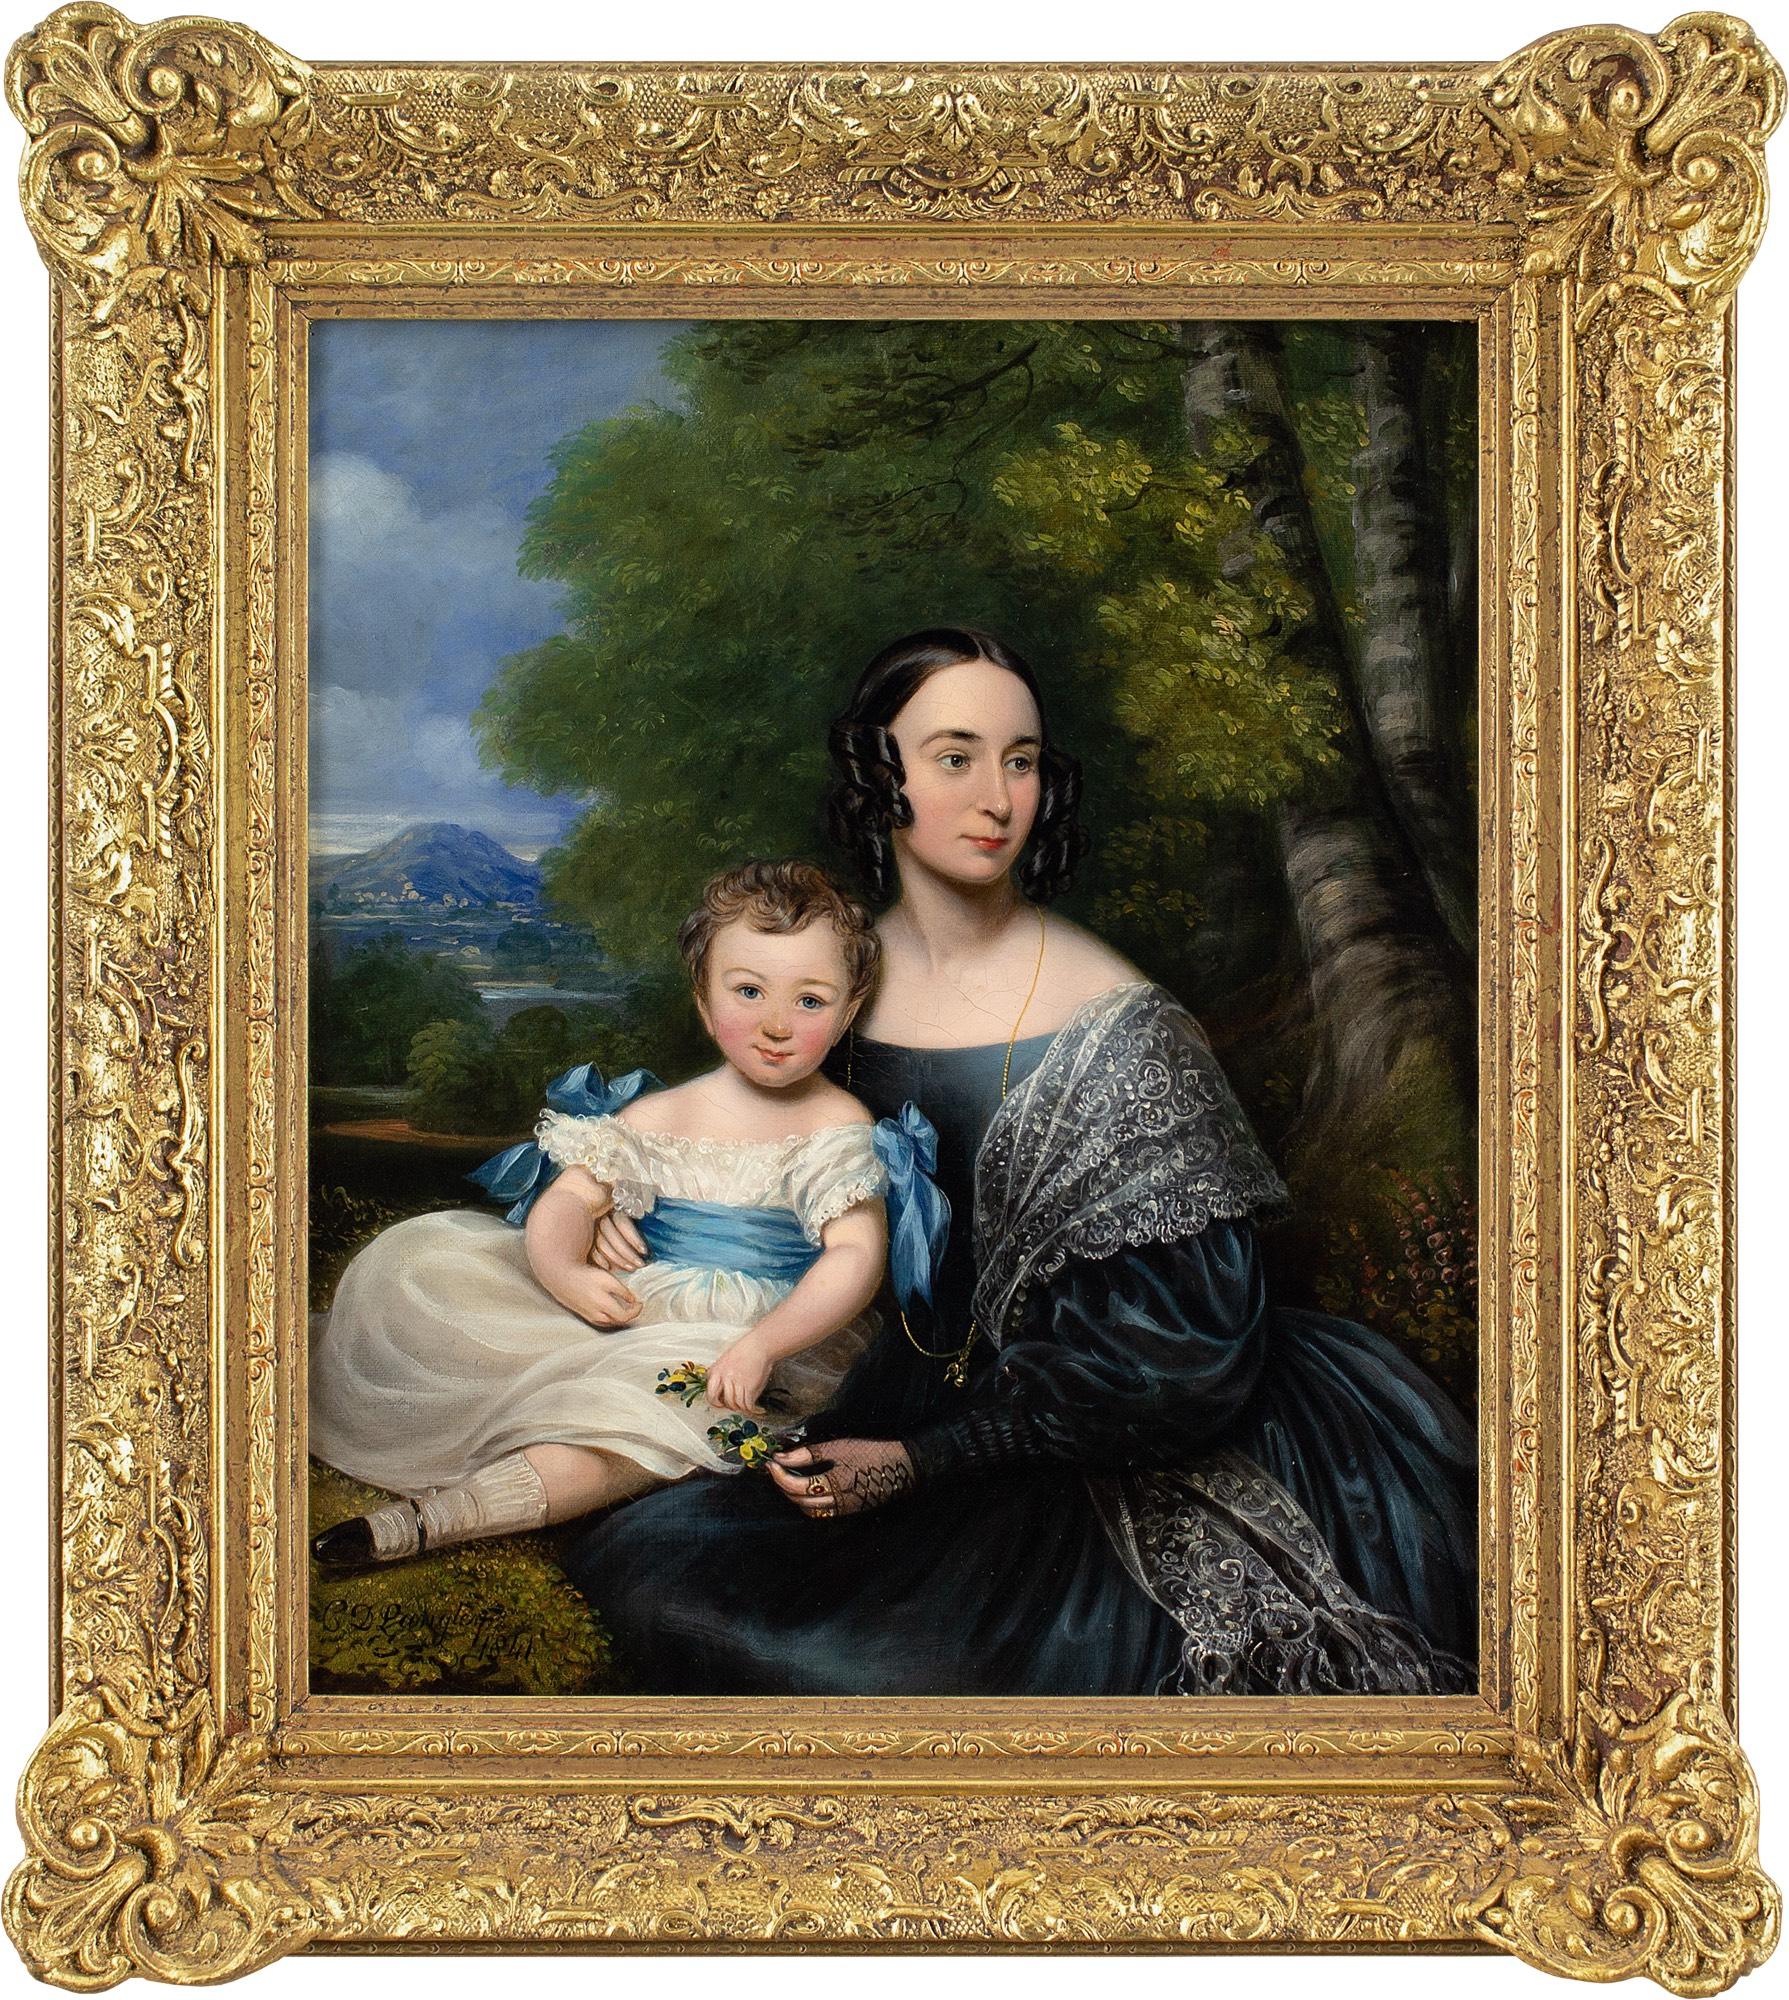 Dieses schöne Ölgemälde des britischen Künstlers Charles Dickinson Langley (1799-1873) aus der Mitte des 19. Jahrhunderts zeigt eine Mutter mit Kind vor einer Landschaft.

Über Langley ist nur wenig bekannt, was angesichts seiner außergewöhnlichen